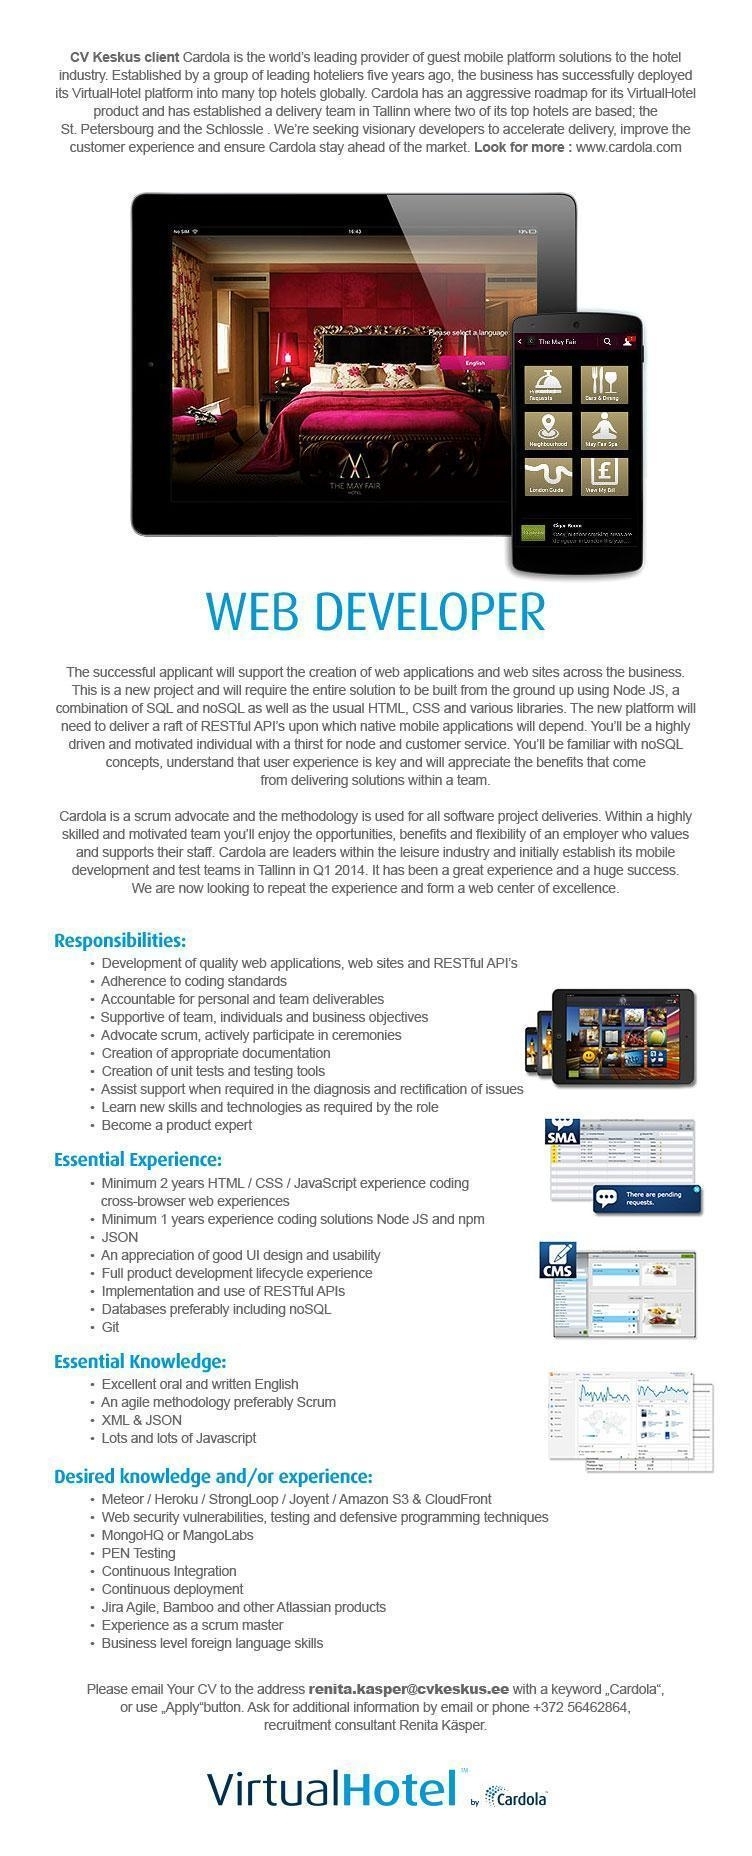 CV KESKUS OÜ Cardola is looking for web developer